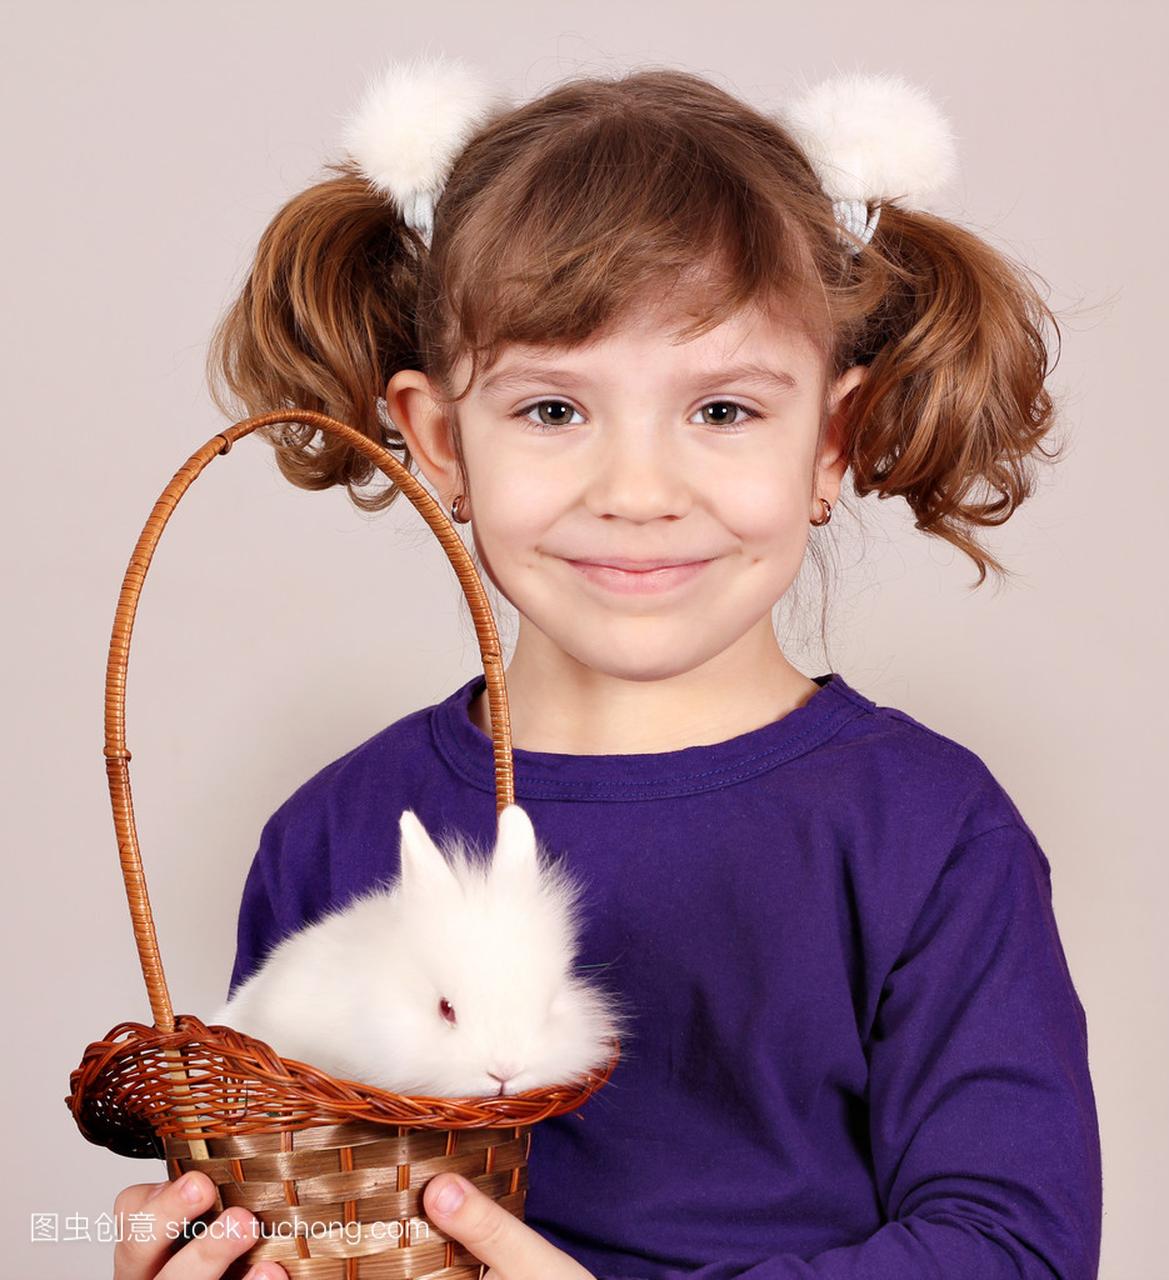 持有与小矮人白兔子一篮子的小女孩